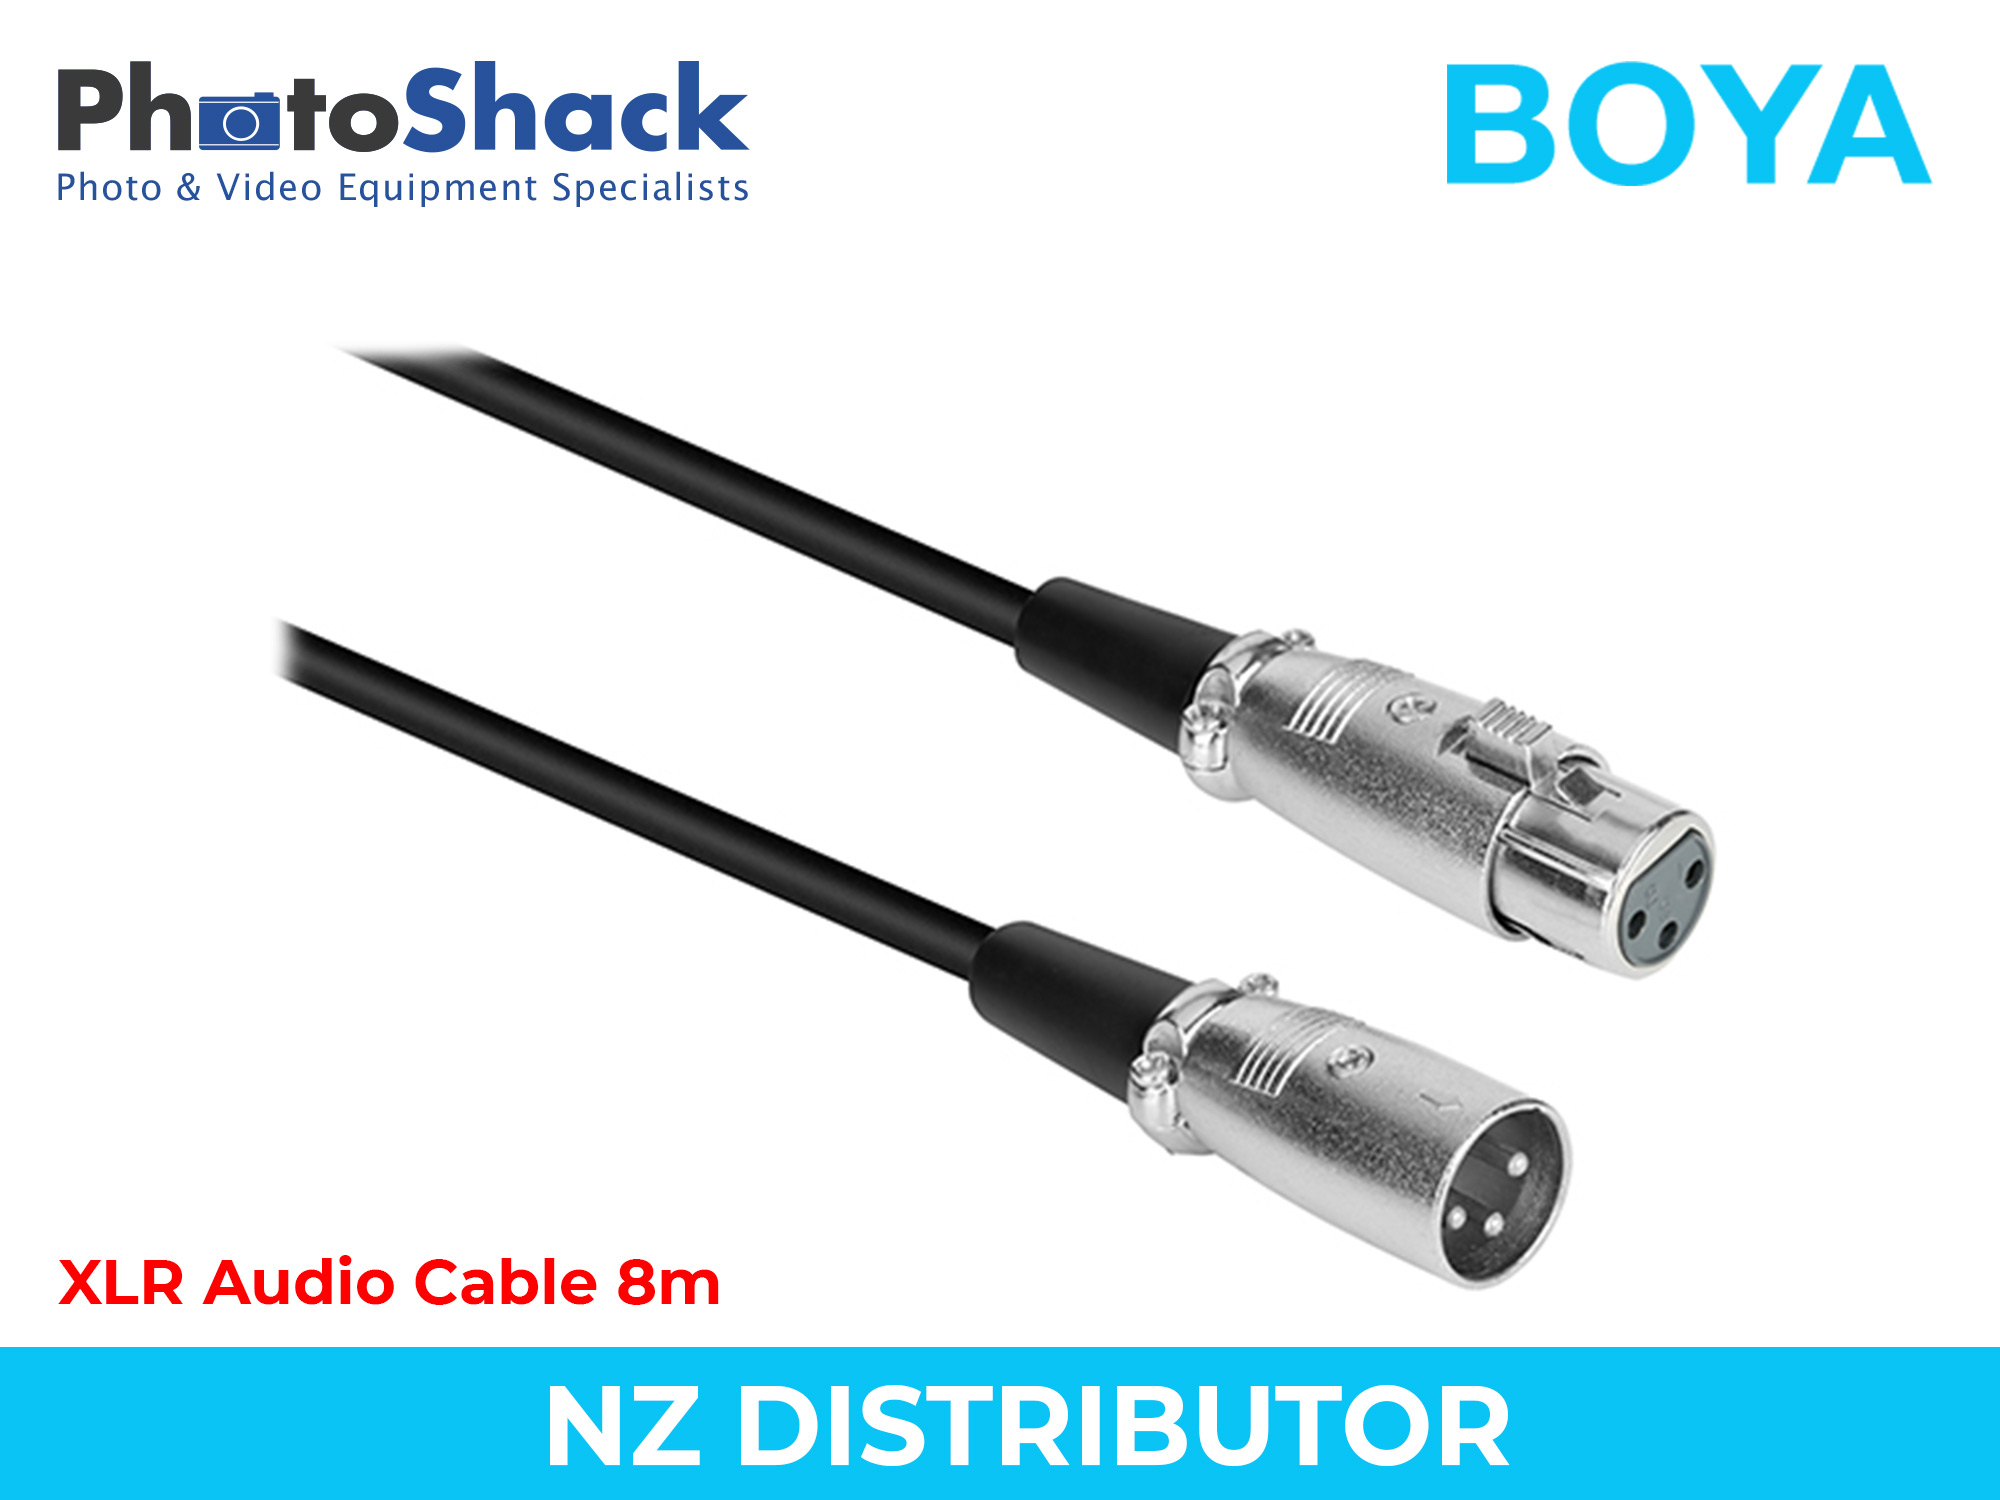 Boya XLR Audio Cable 8m